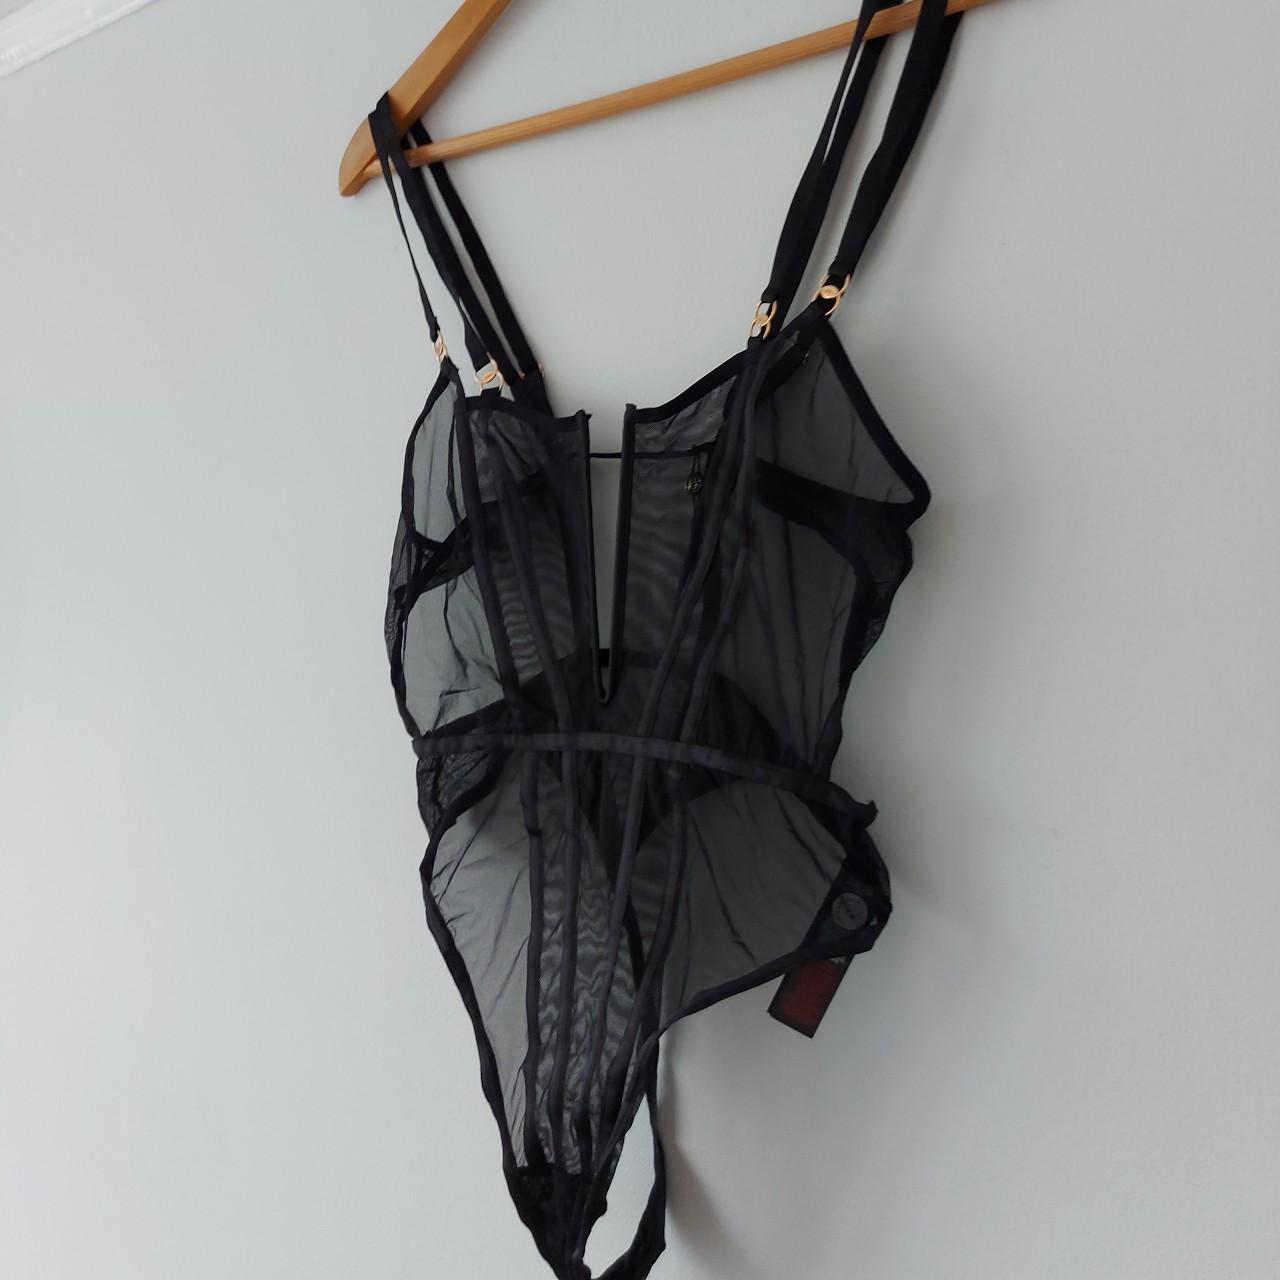 Bluebella Black Elizabeth Soft Bodysuit. mesh panels... - Depop